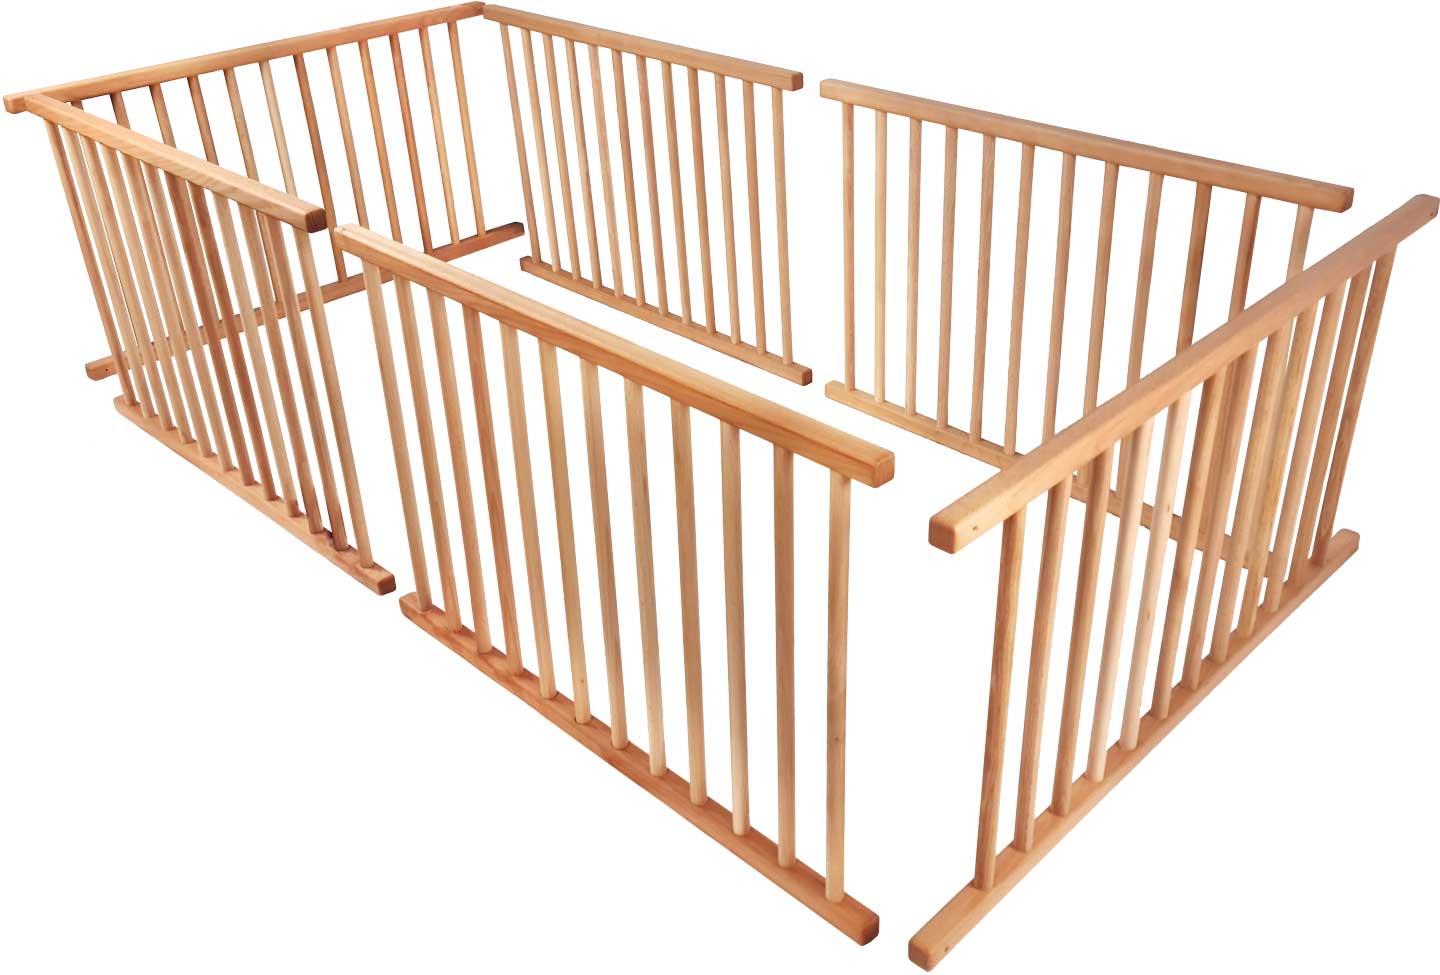 Zestaw bramek dla dzieci na całej powierzchni leżącej (łóżko na poddaszu rosnące wraz z dzieckiem, łóżko piętrowe nad rogiem* lub łóżko piętrowe przesunięte bokiem*)